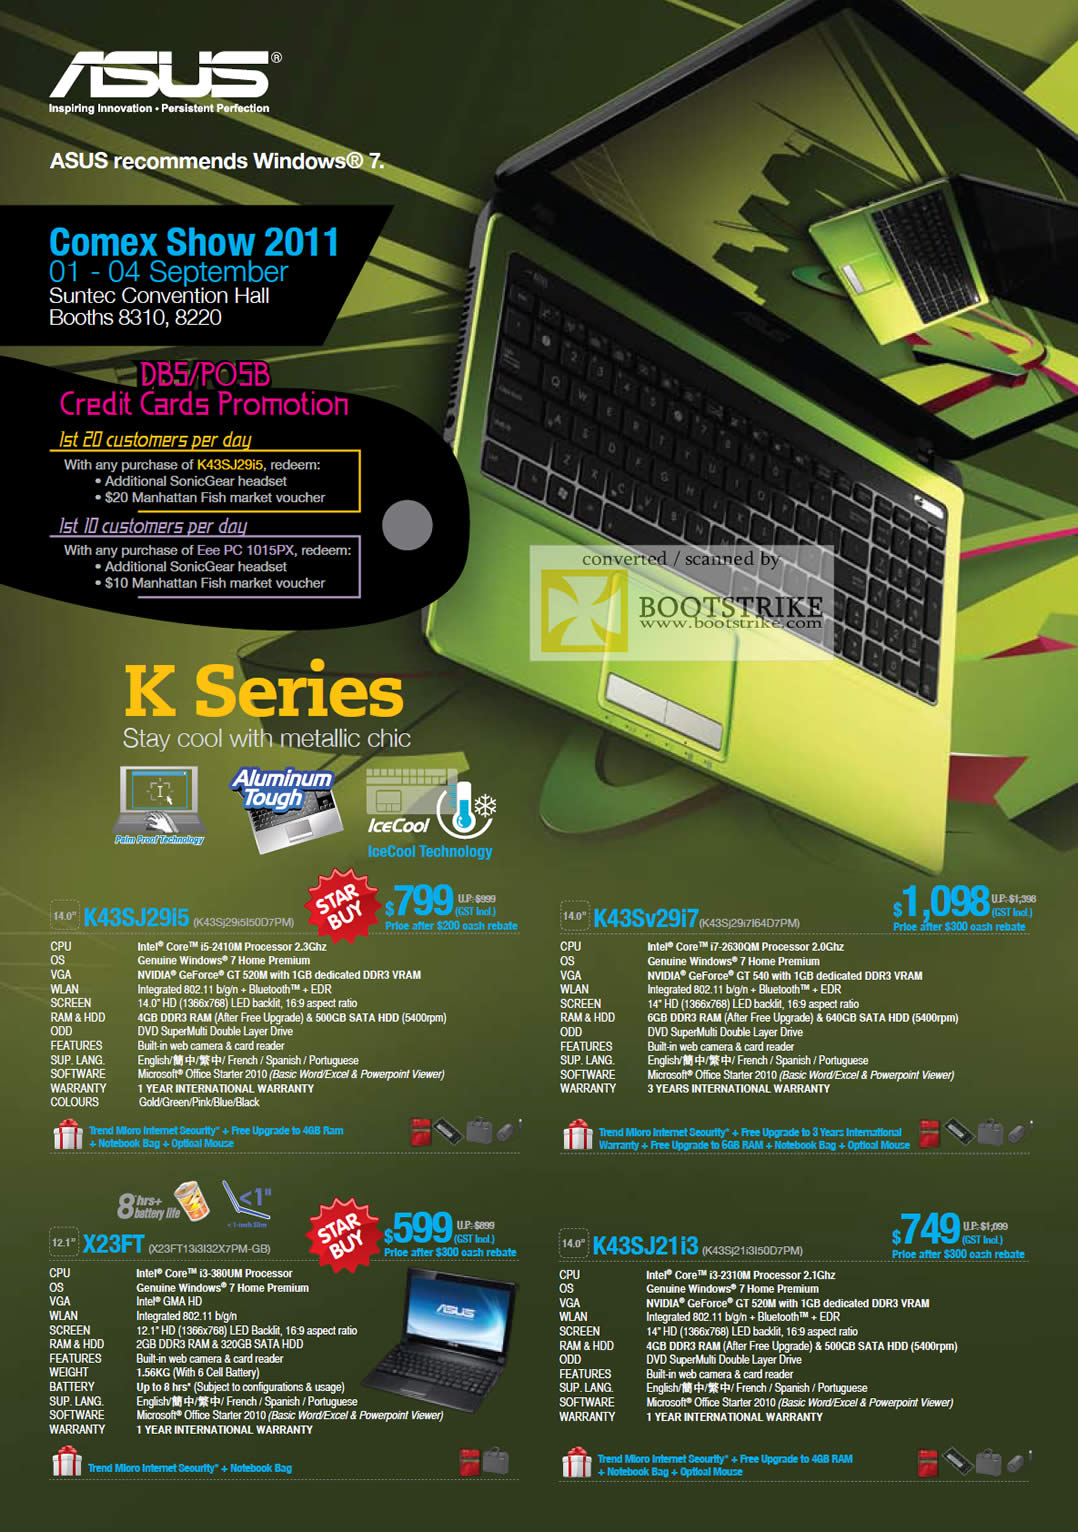 COMEX 2011 price list image brochure of ASUS Notebooks K Series K43SJ29i5 K43Sv29i7 X23FT K43SJ21i3